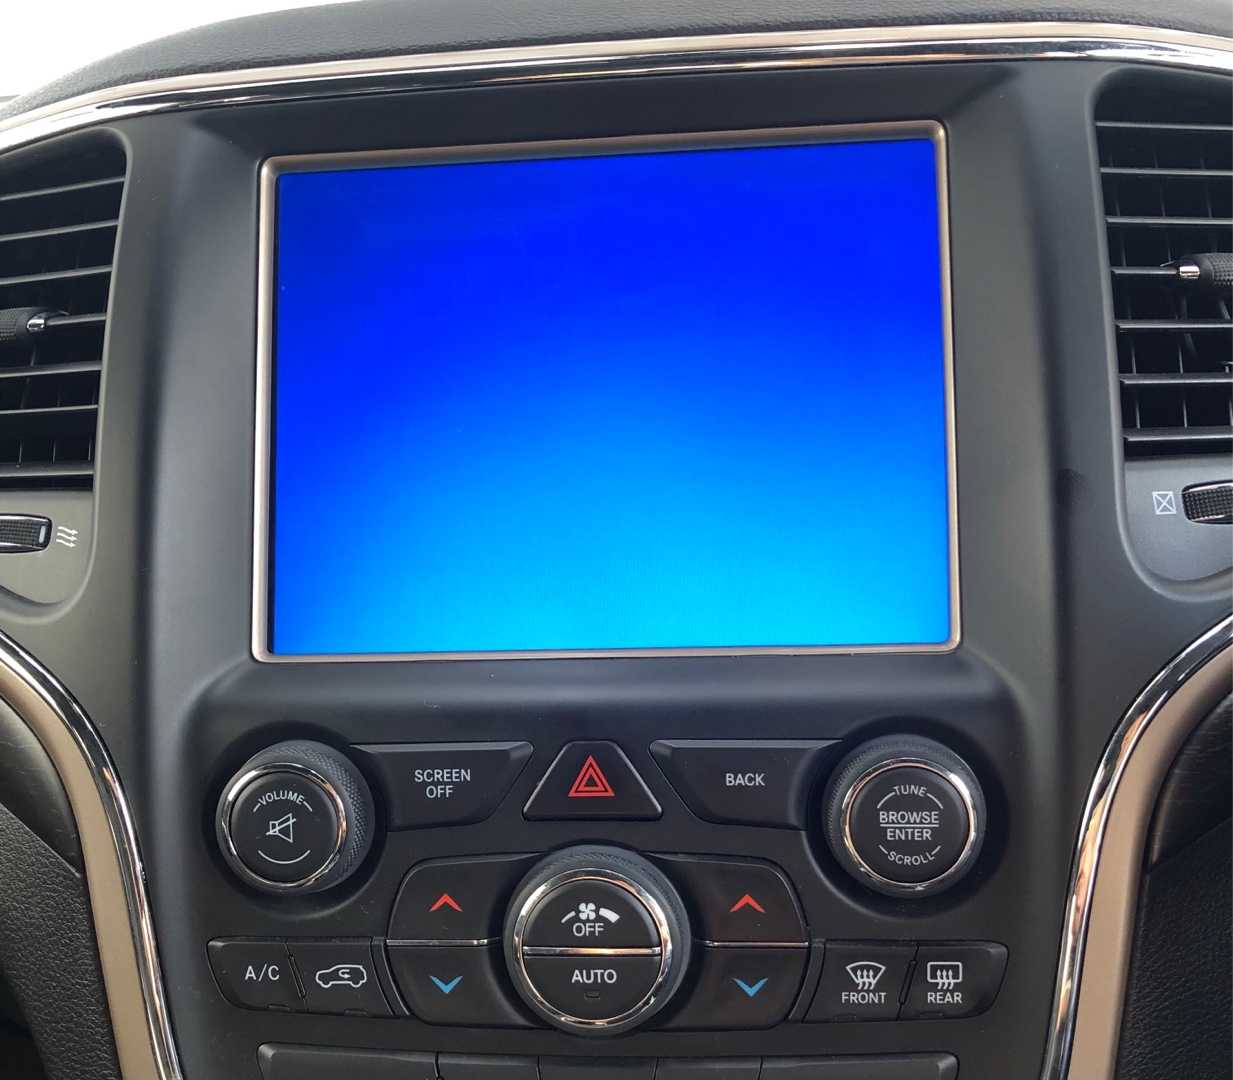 10768円 2021新作モデル ジープグランドチェロキー第3世代2005-2010に適しています 磁気特殊カーテンウィンドウシェードネットシェーディングブラインドフルカバー プライバシー保護 色 : Rear 3 windows